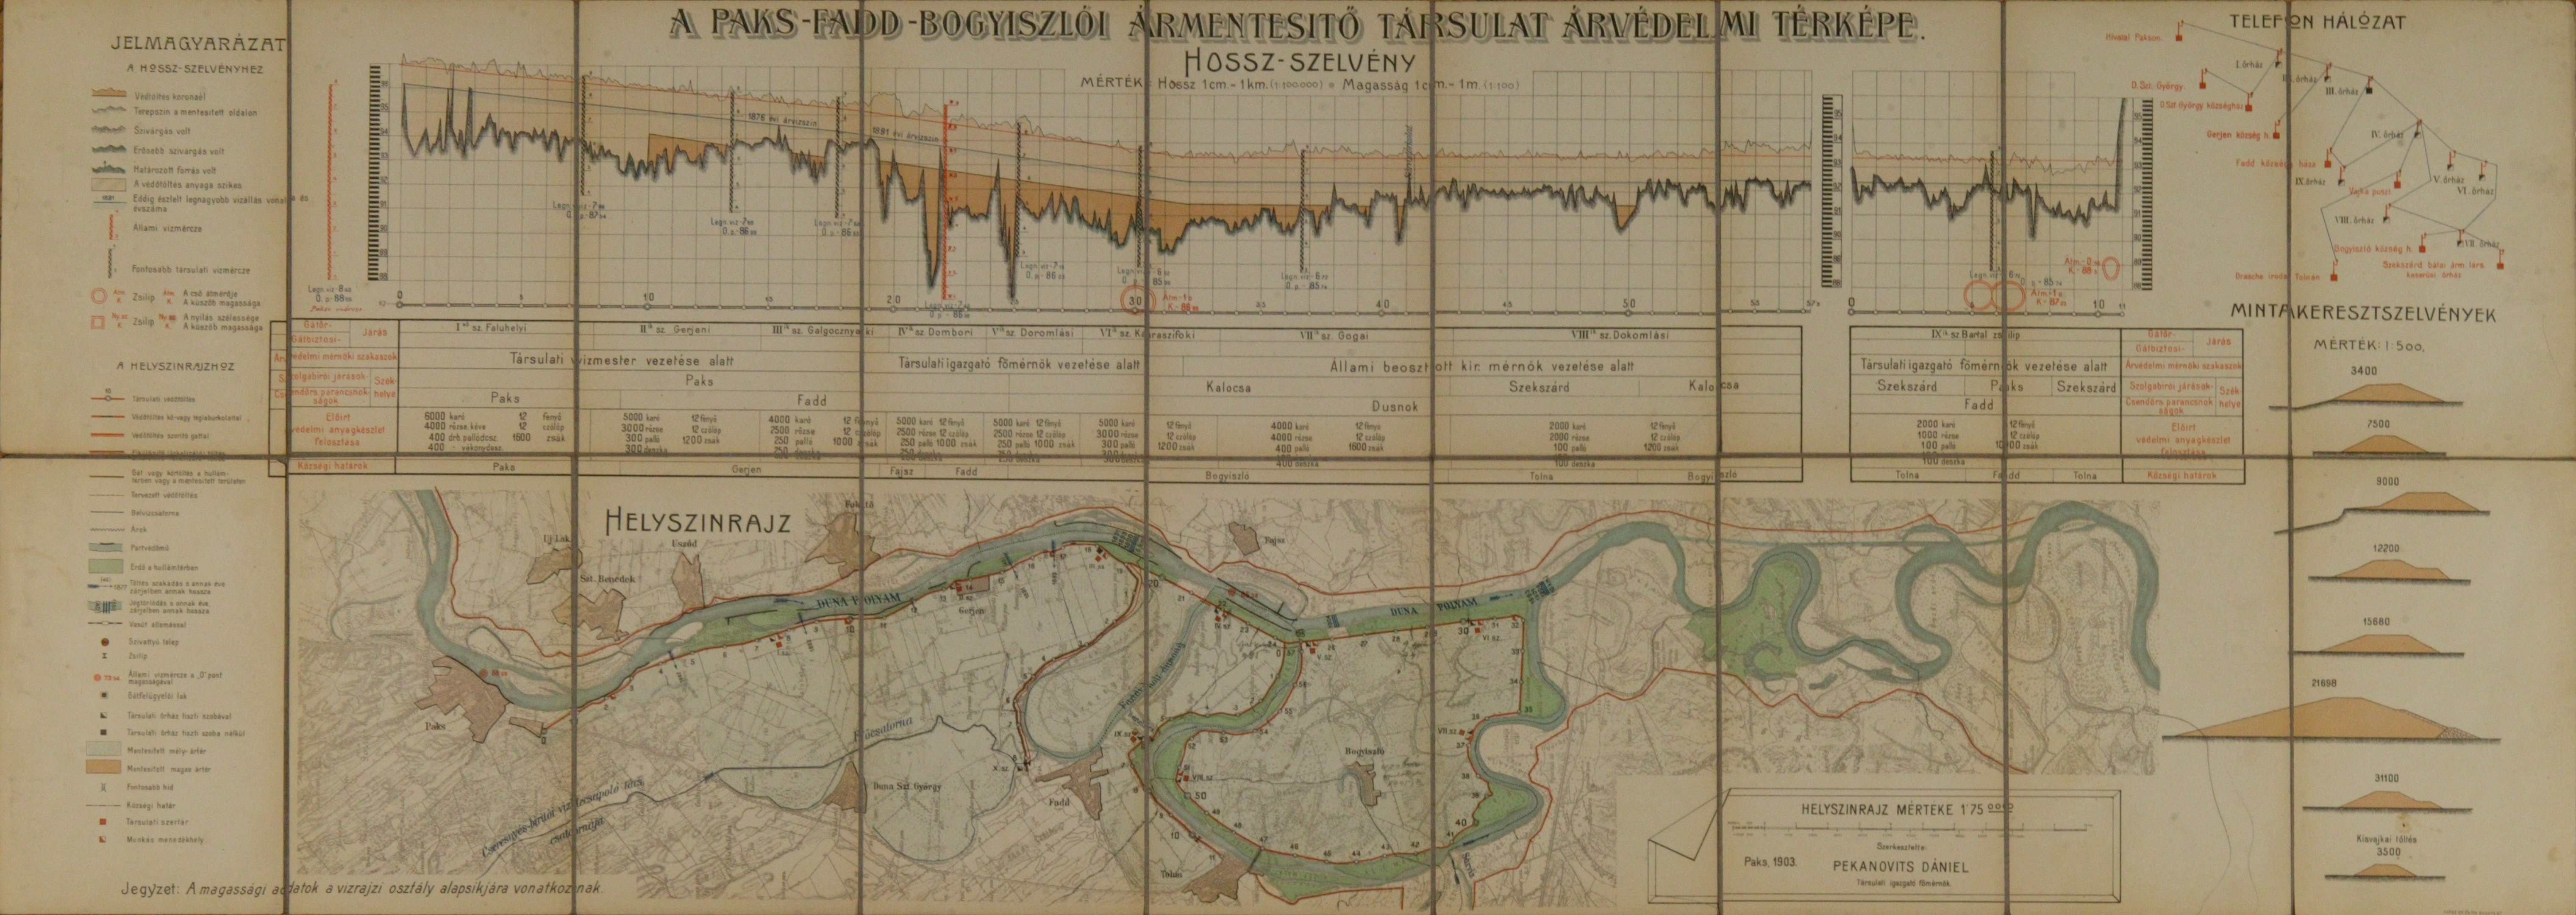 Paks-Fadd-Bogyiszlói Ármentesítő Társulat árvédelmi térképe (Magyar Környezetvédelmi és Vízügyi Múzeum - Duna Múzeum CC BY-NC-SA)